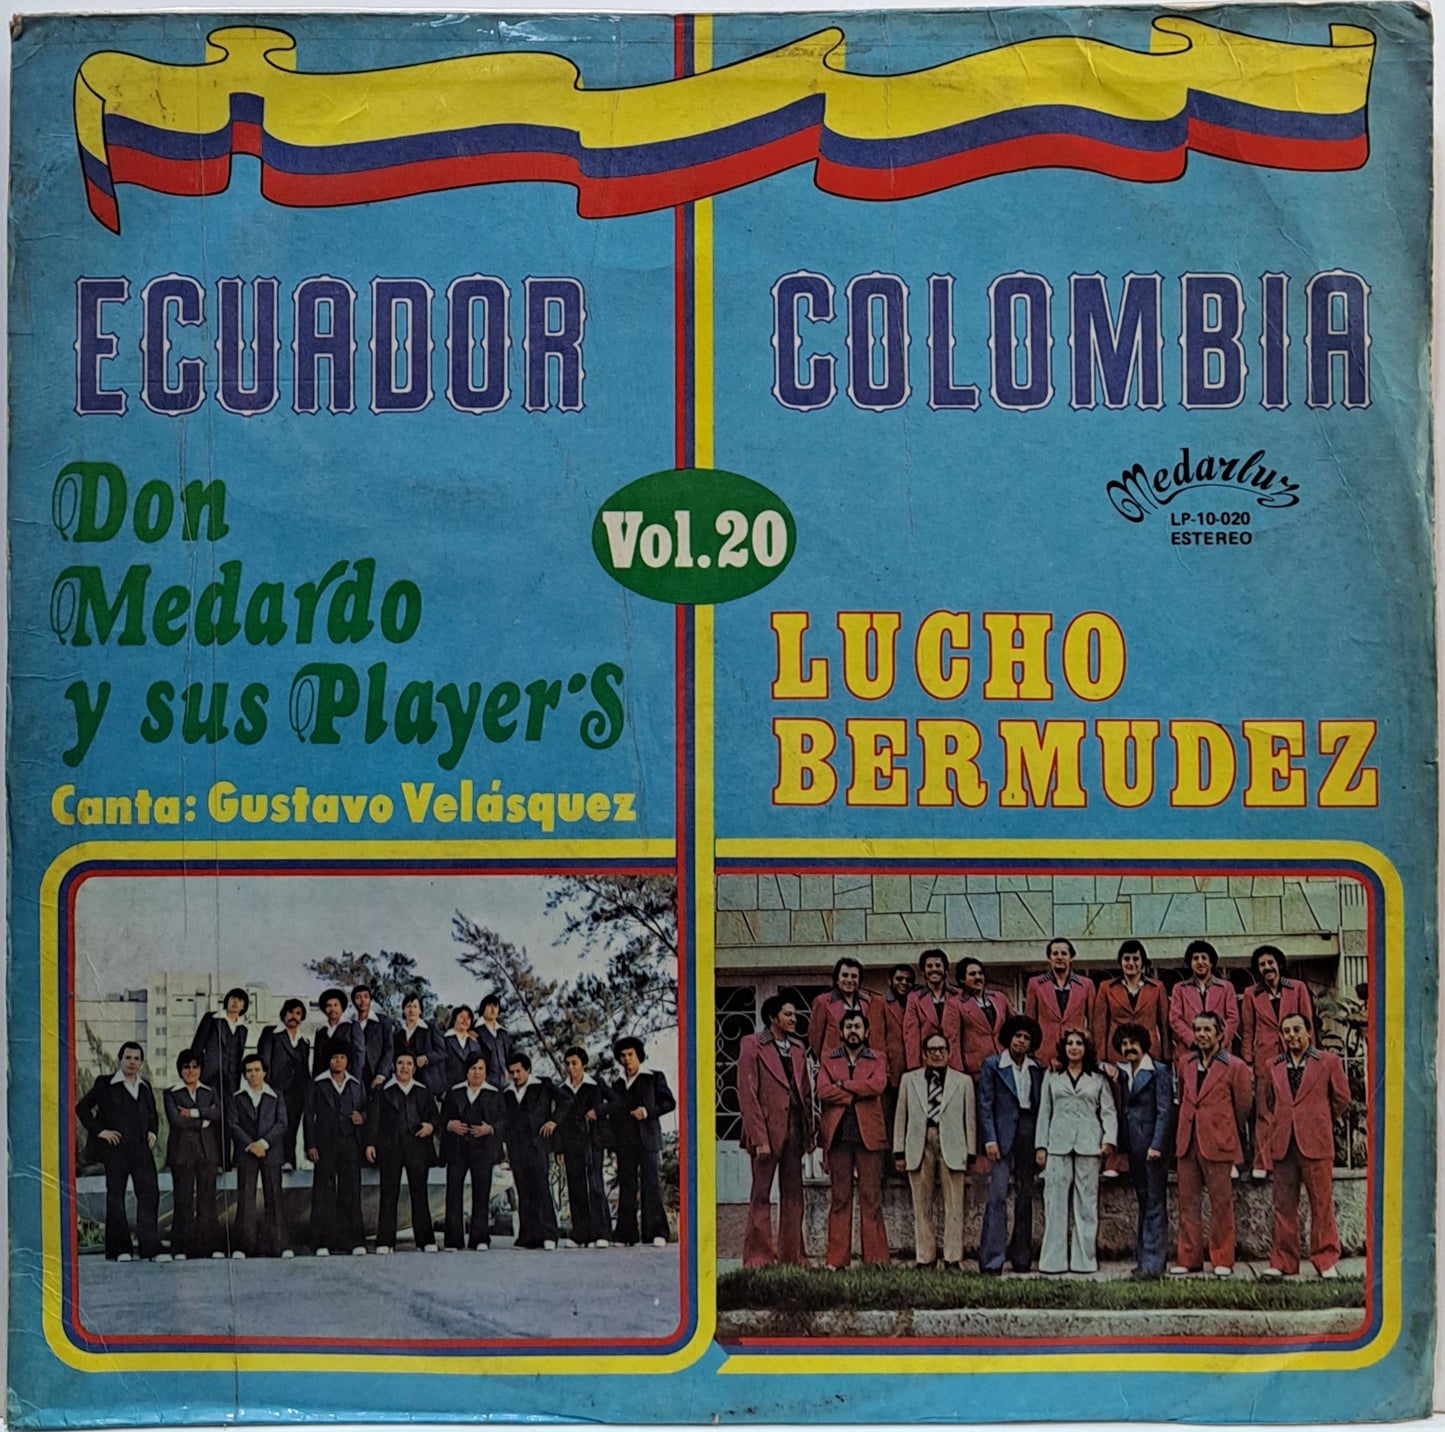 DON MEDARDO Y SUS PLAYERS - ECUADOR COLOMBIA LP